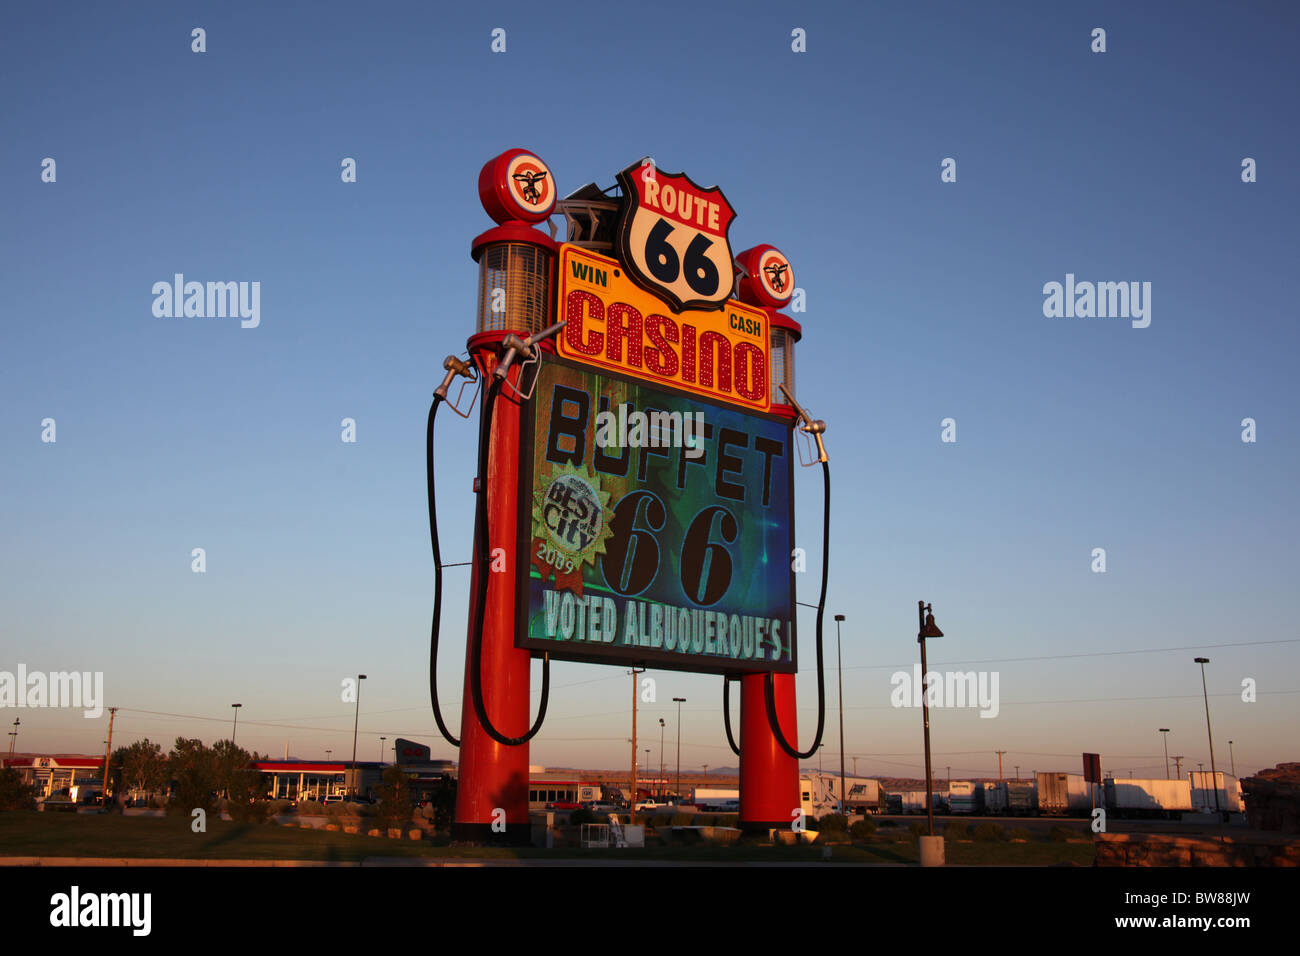 Route 66 Casino Hotel roadside neon sign in Albuquerque, New Mexico, June 16, 2010 Stock Photo